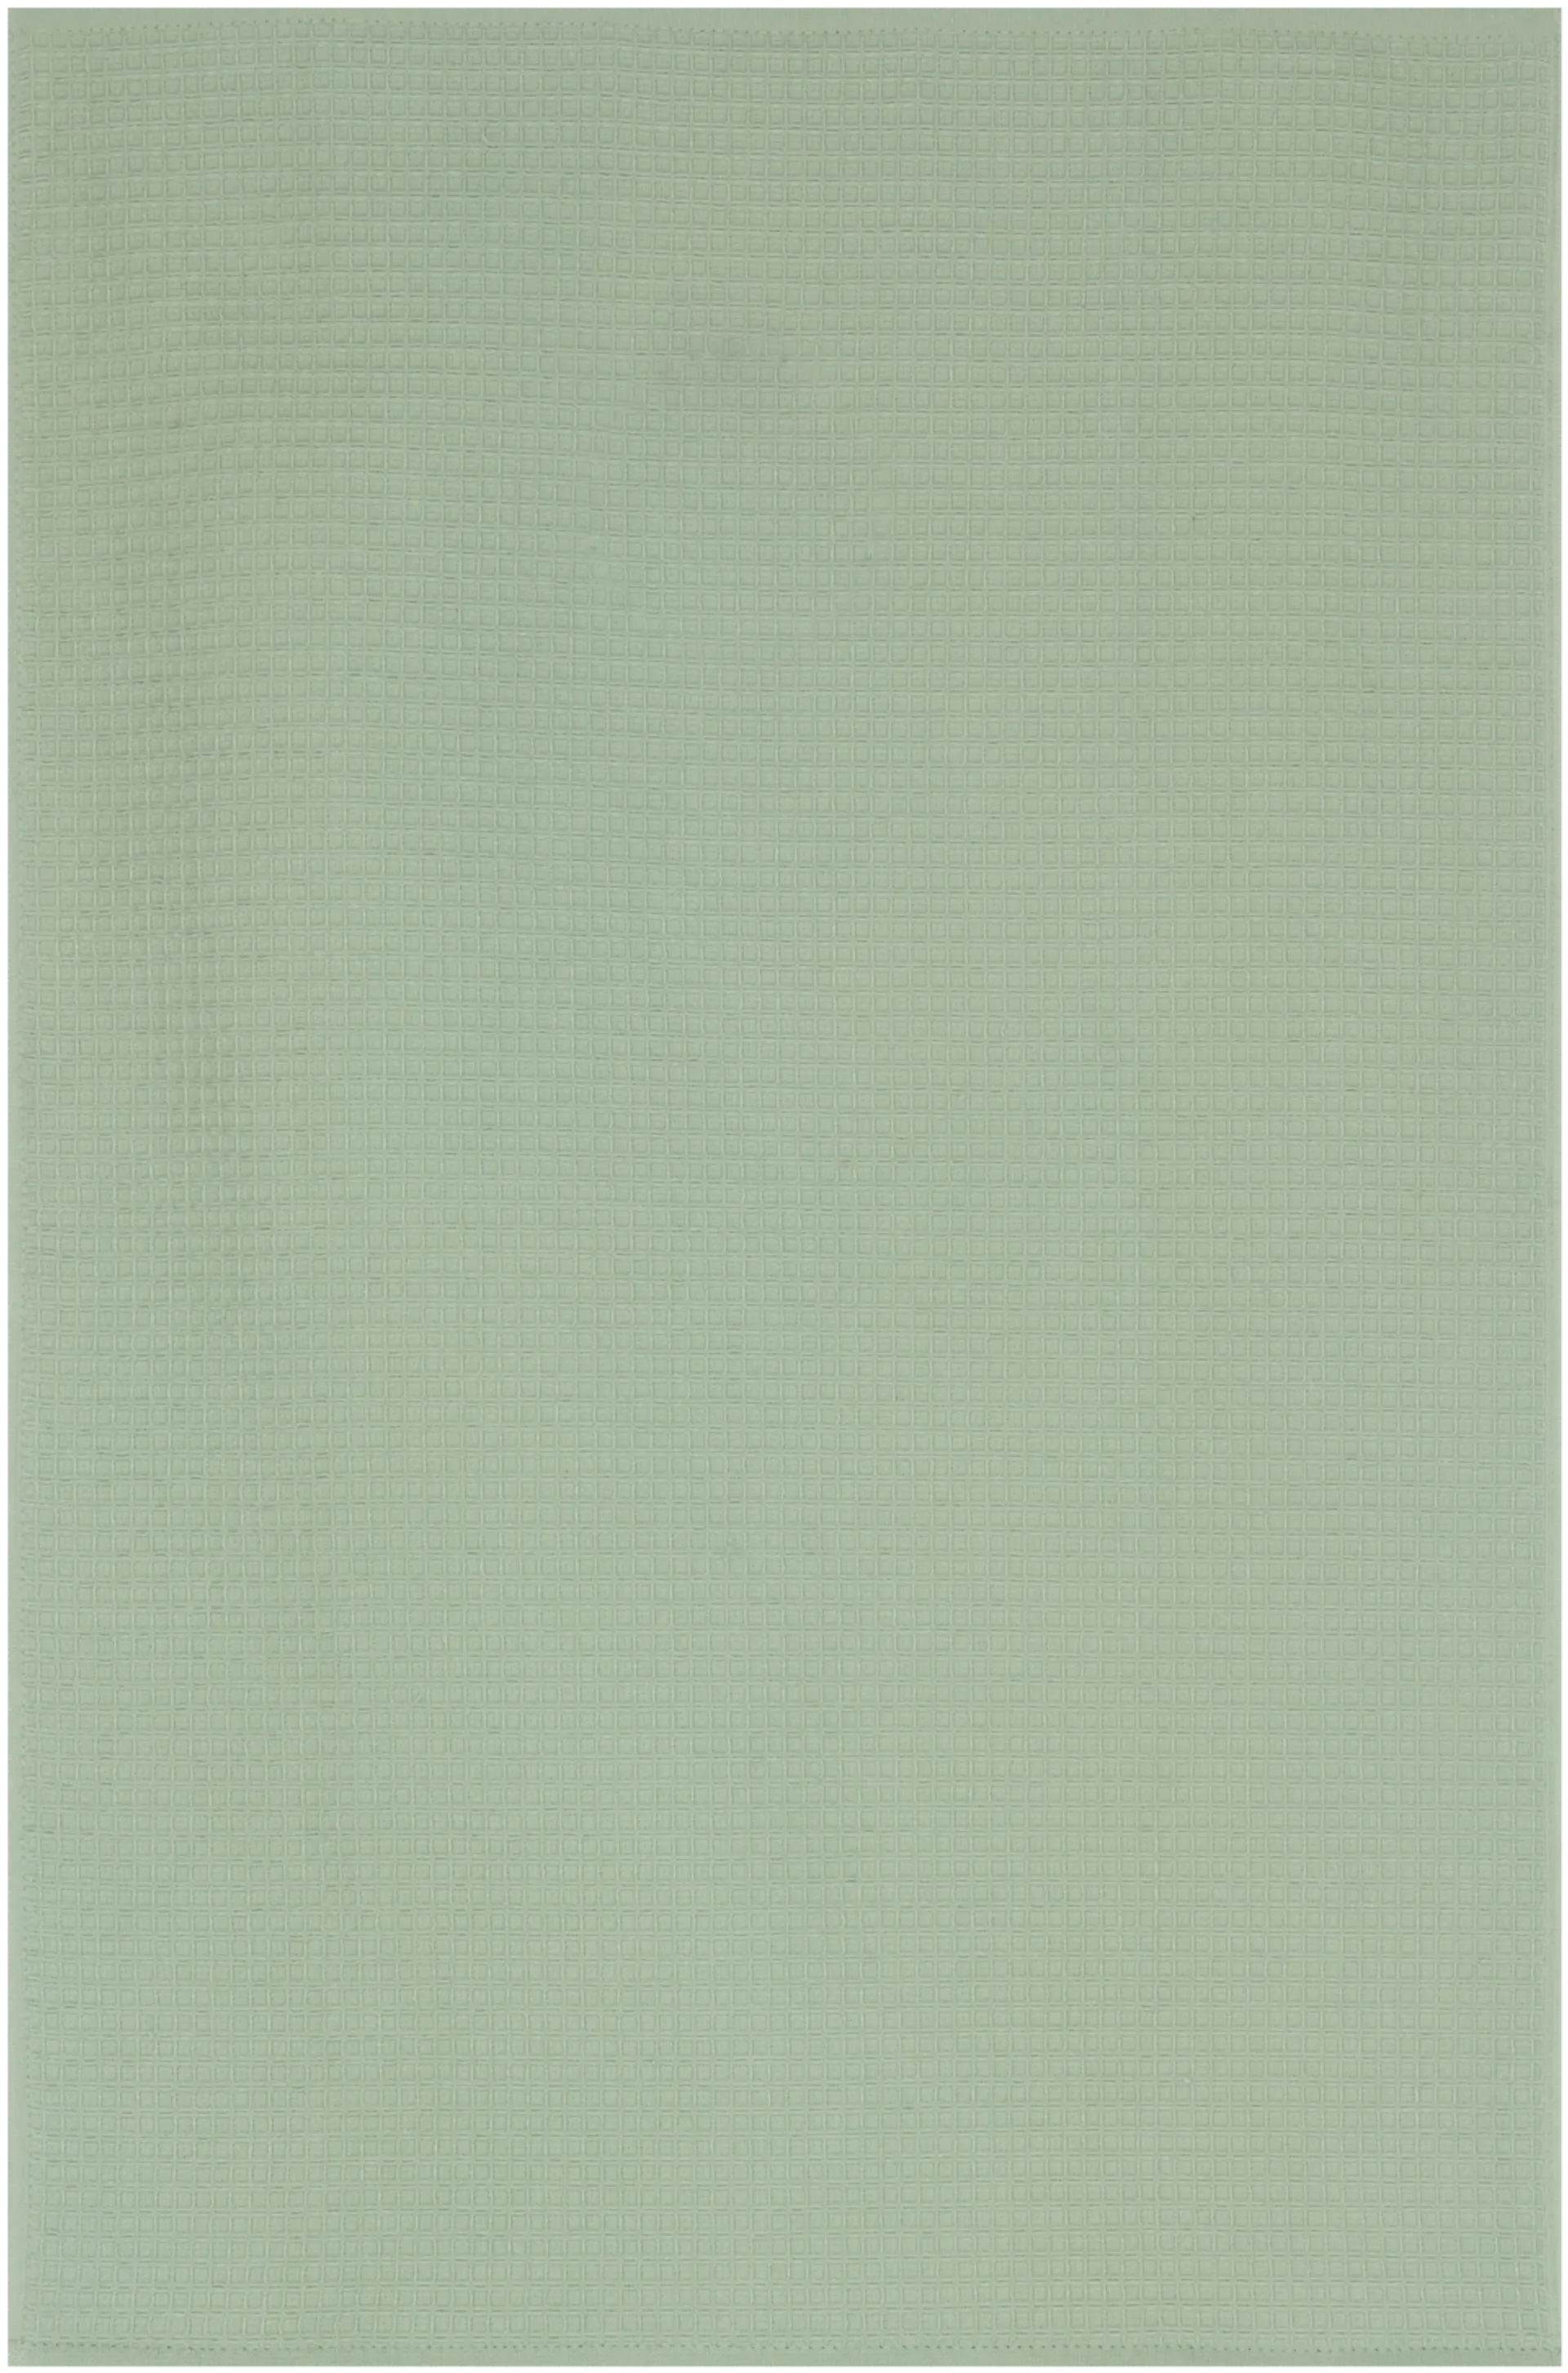 House käsipyyhe Vohveli 50x70 cm, vihreä